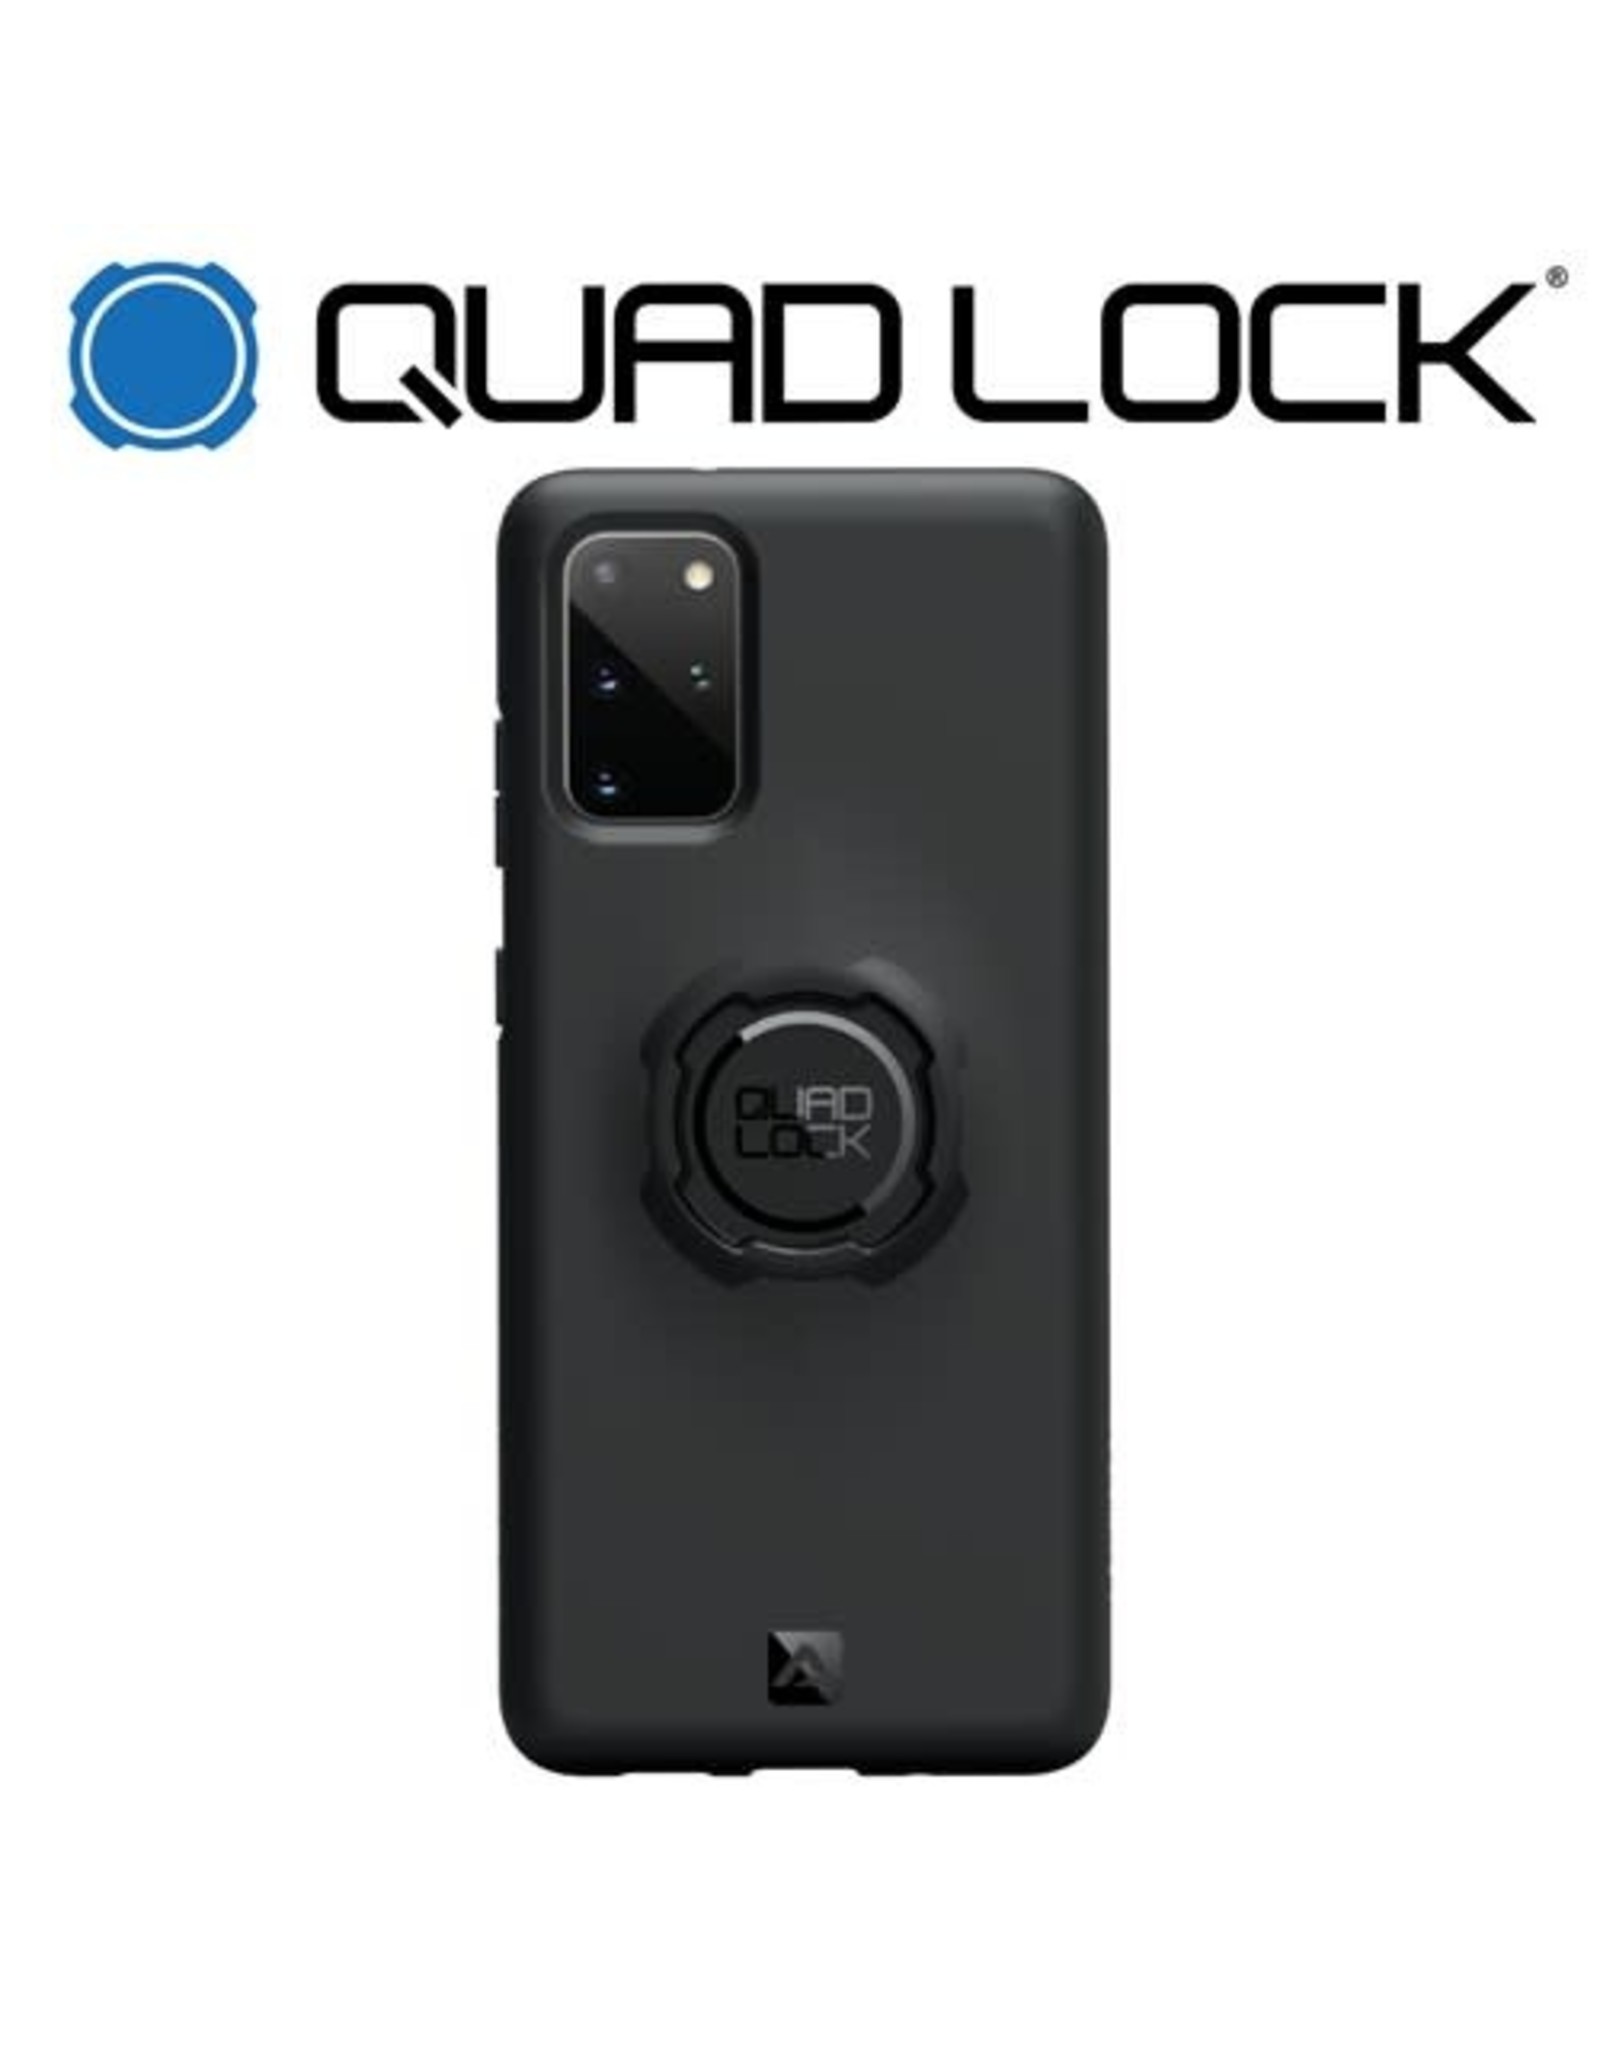 QUAD LOCK QUAD LOCK FOR GALAXY S20+ PHONE CASE